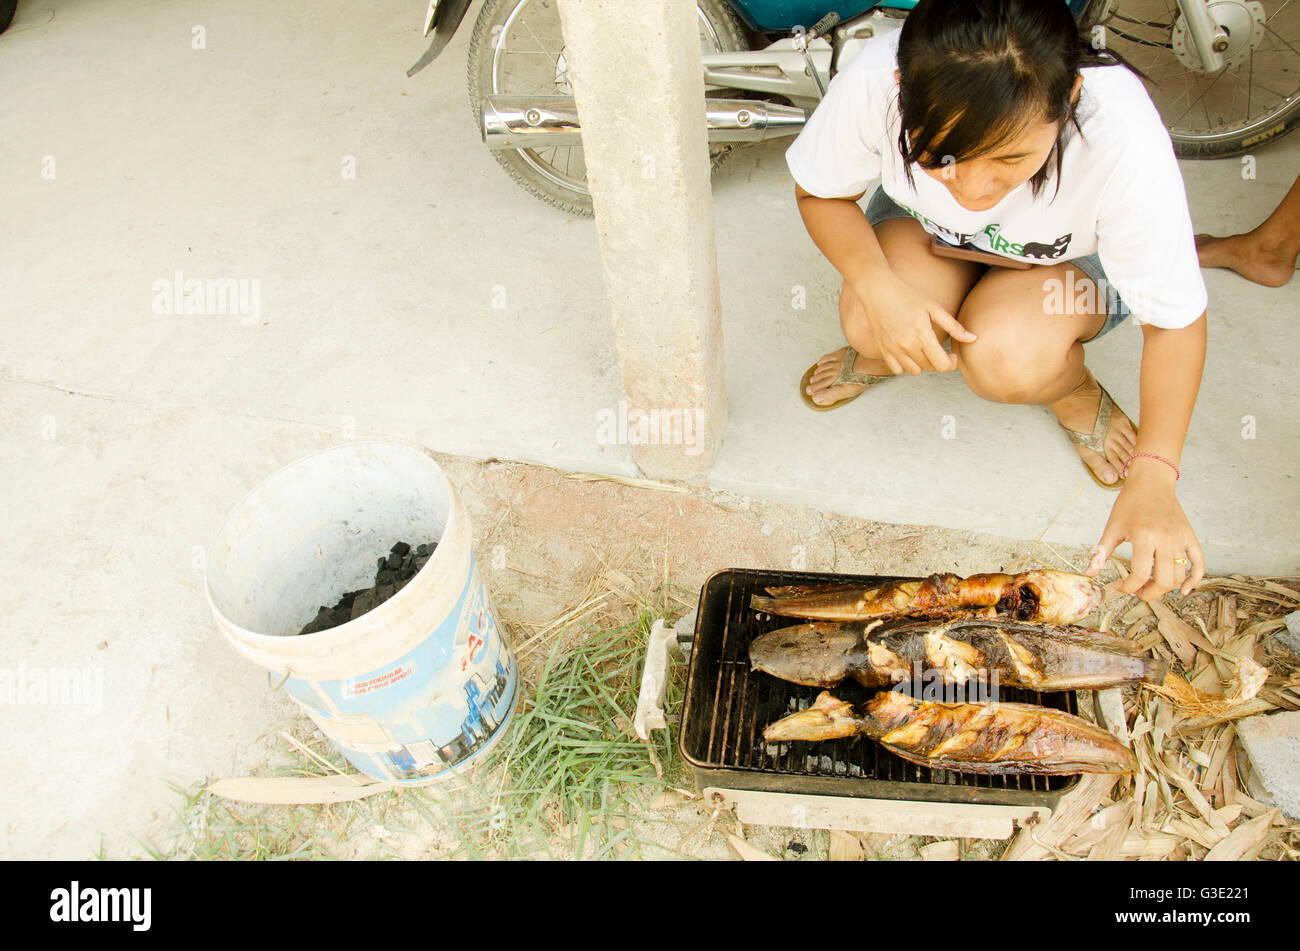 Les femmes thai cooking clarias est une espèce de poisson-chat marche thai style frites grillées sur vieille cuisinière Banque D'Images